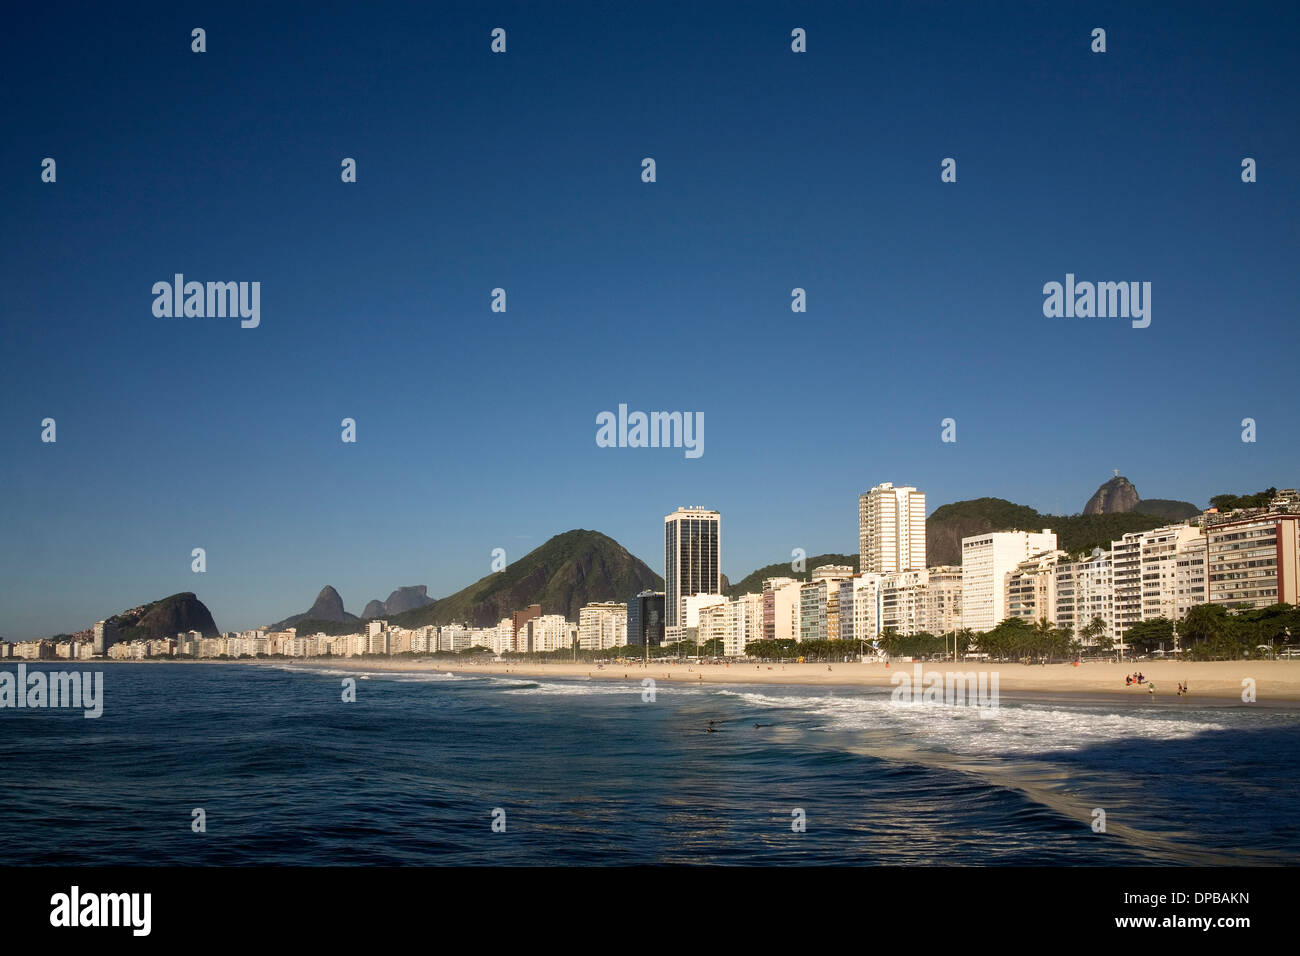 La plage de Copacabana et les bâtiments avec vue sur le Christ Rédempteur (Corcovado) dans l'arrière-plan. Rio de Janeiro. Brésil. Banque D'Images